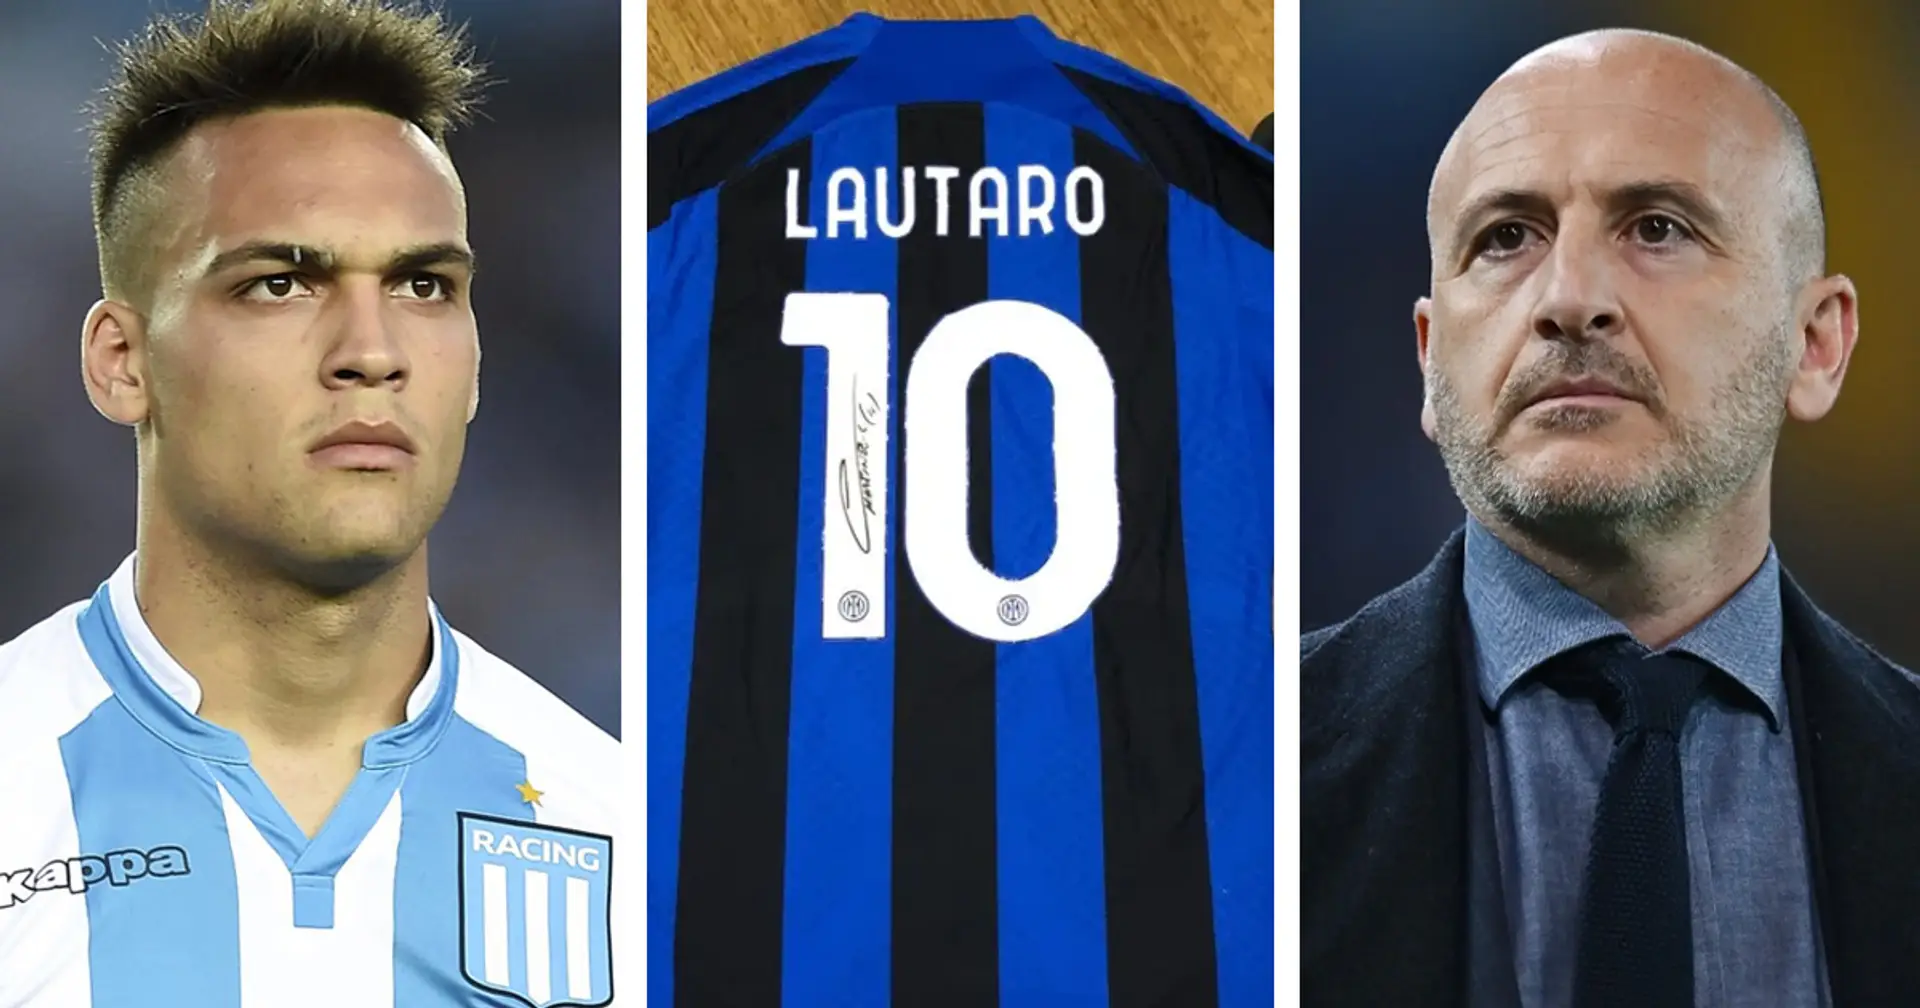 Beffa all'Atletico, maglia numero 10 nella valigia di Ausilio, e non solo: 3 retroscena sull'affare che ha portato Lautaro all'Inter